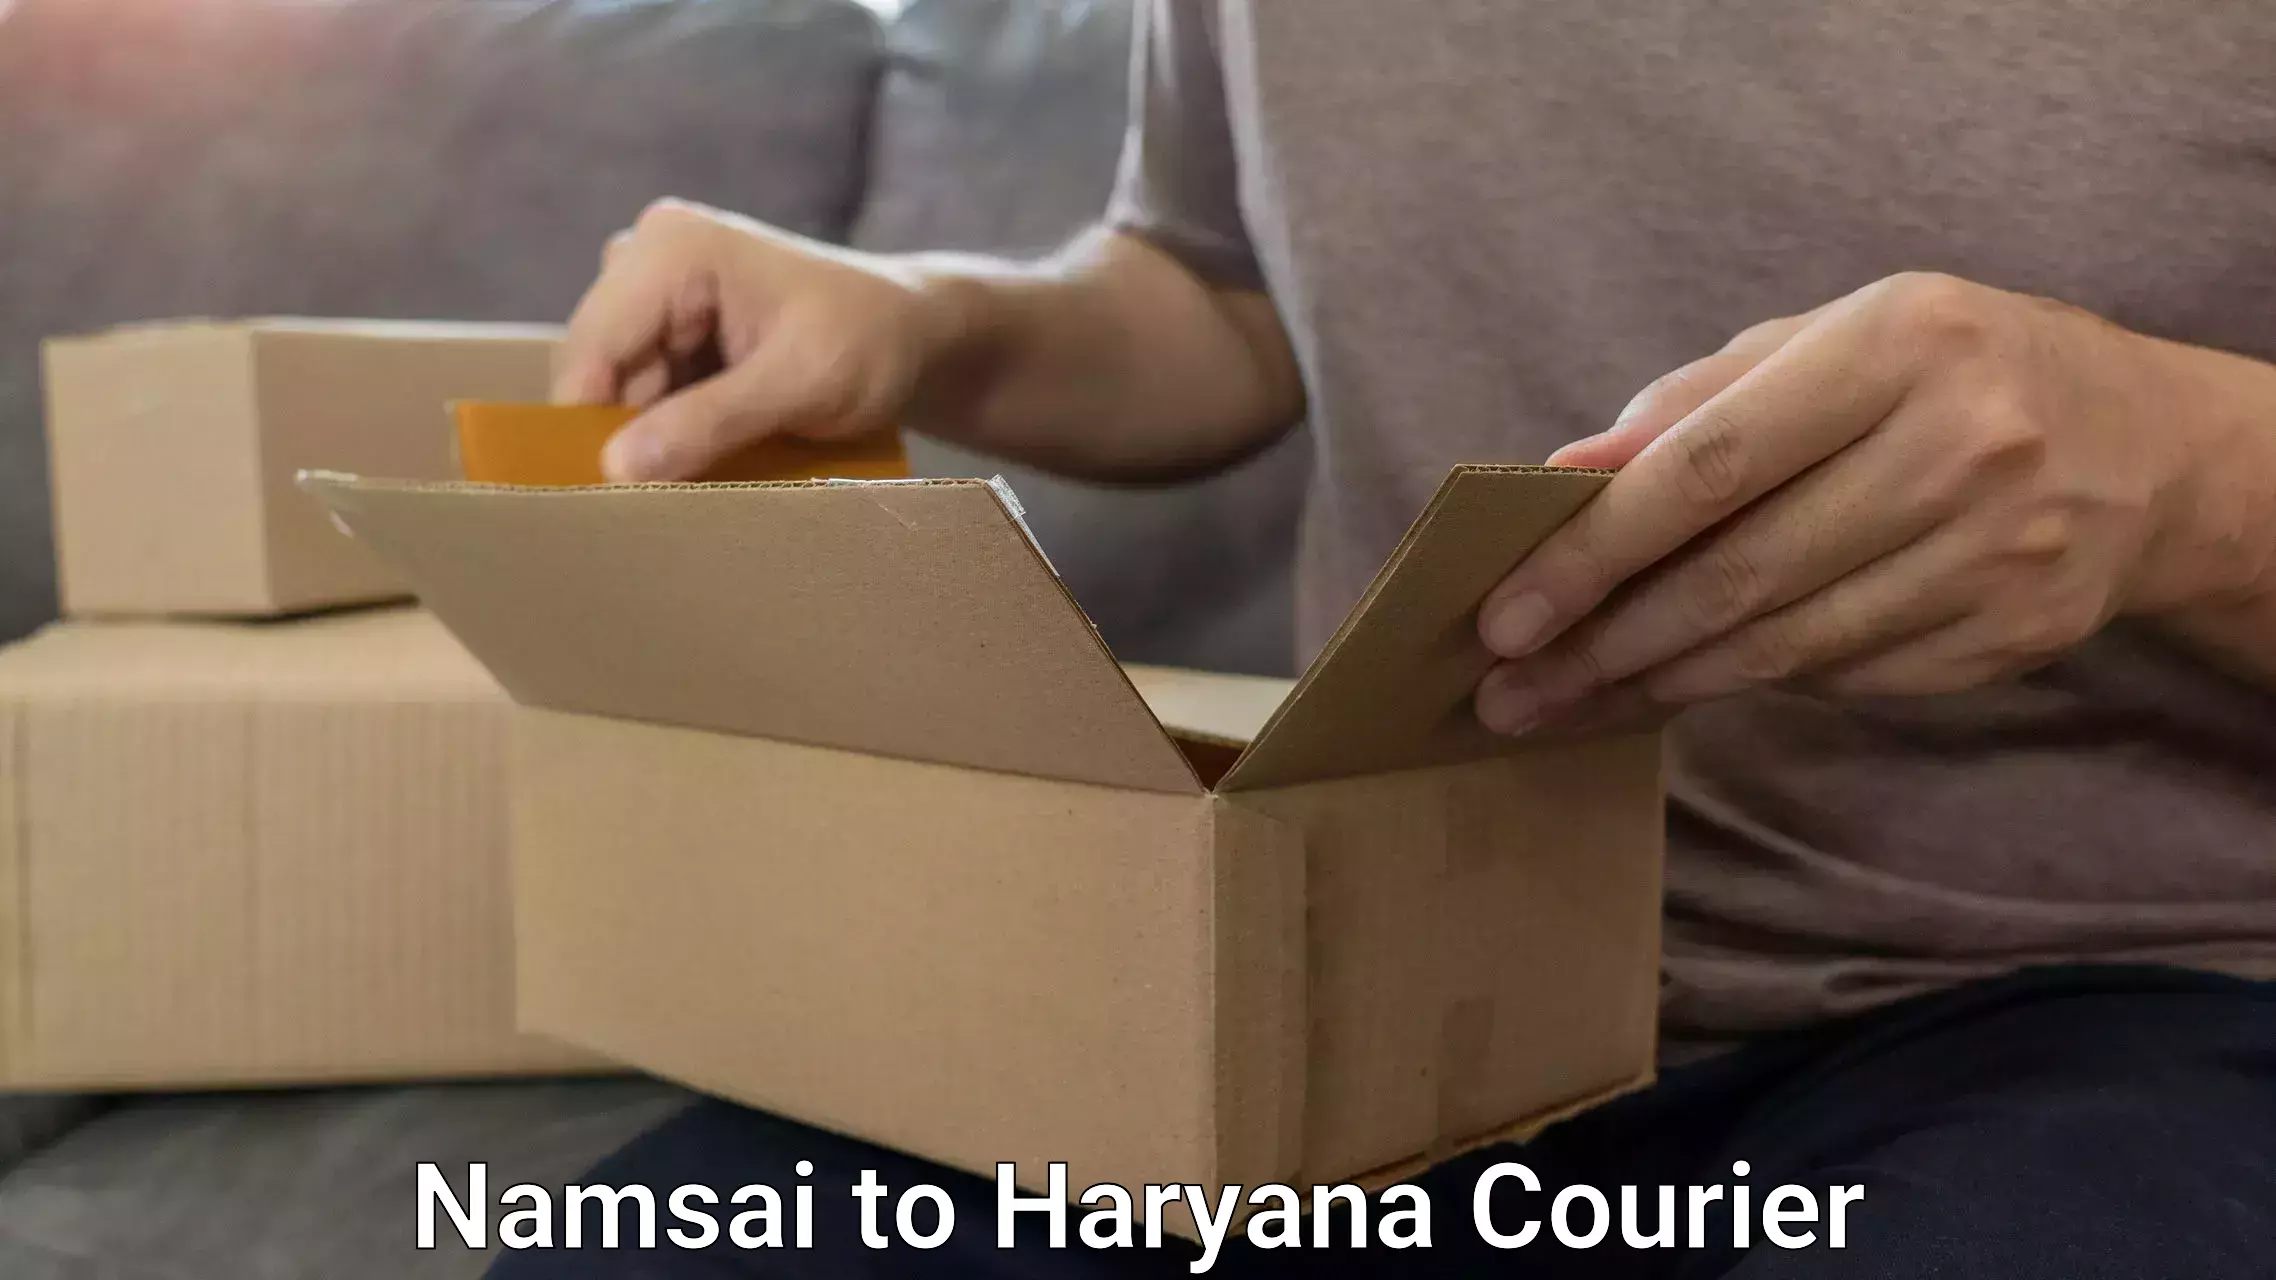 High-quality baggage shipment Namsai to NCR Haryana